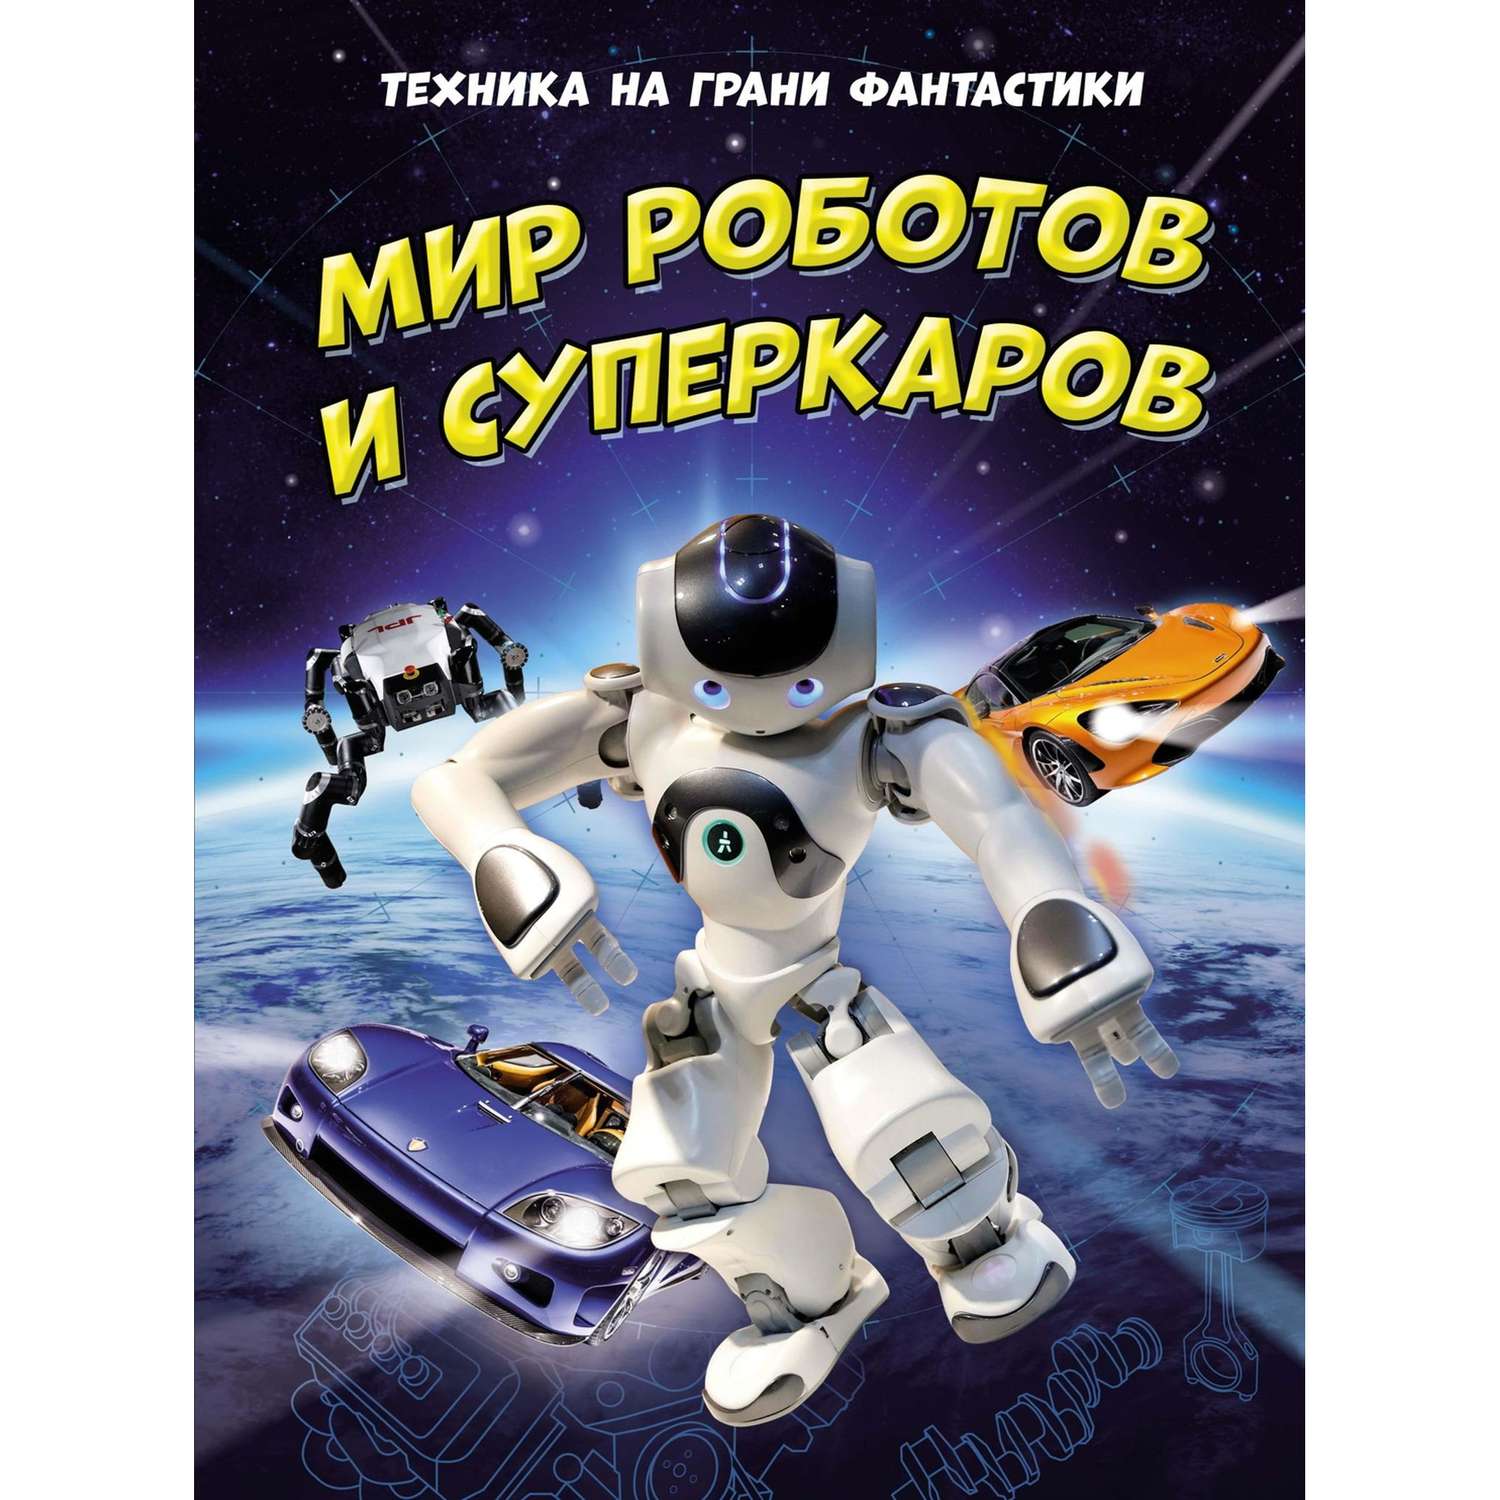 Книга Махаон Мир роботов и суперкаров Техника на грани фантастики - фото 1